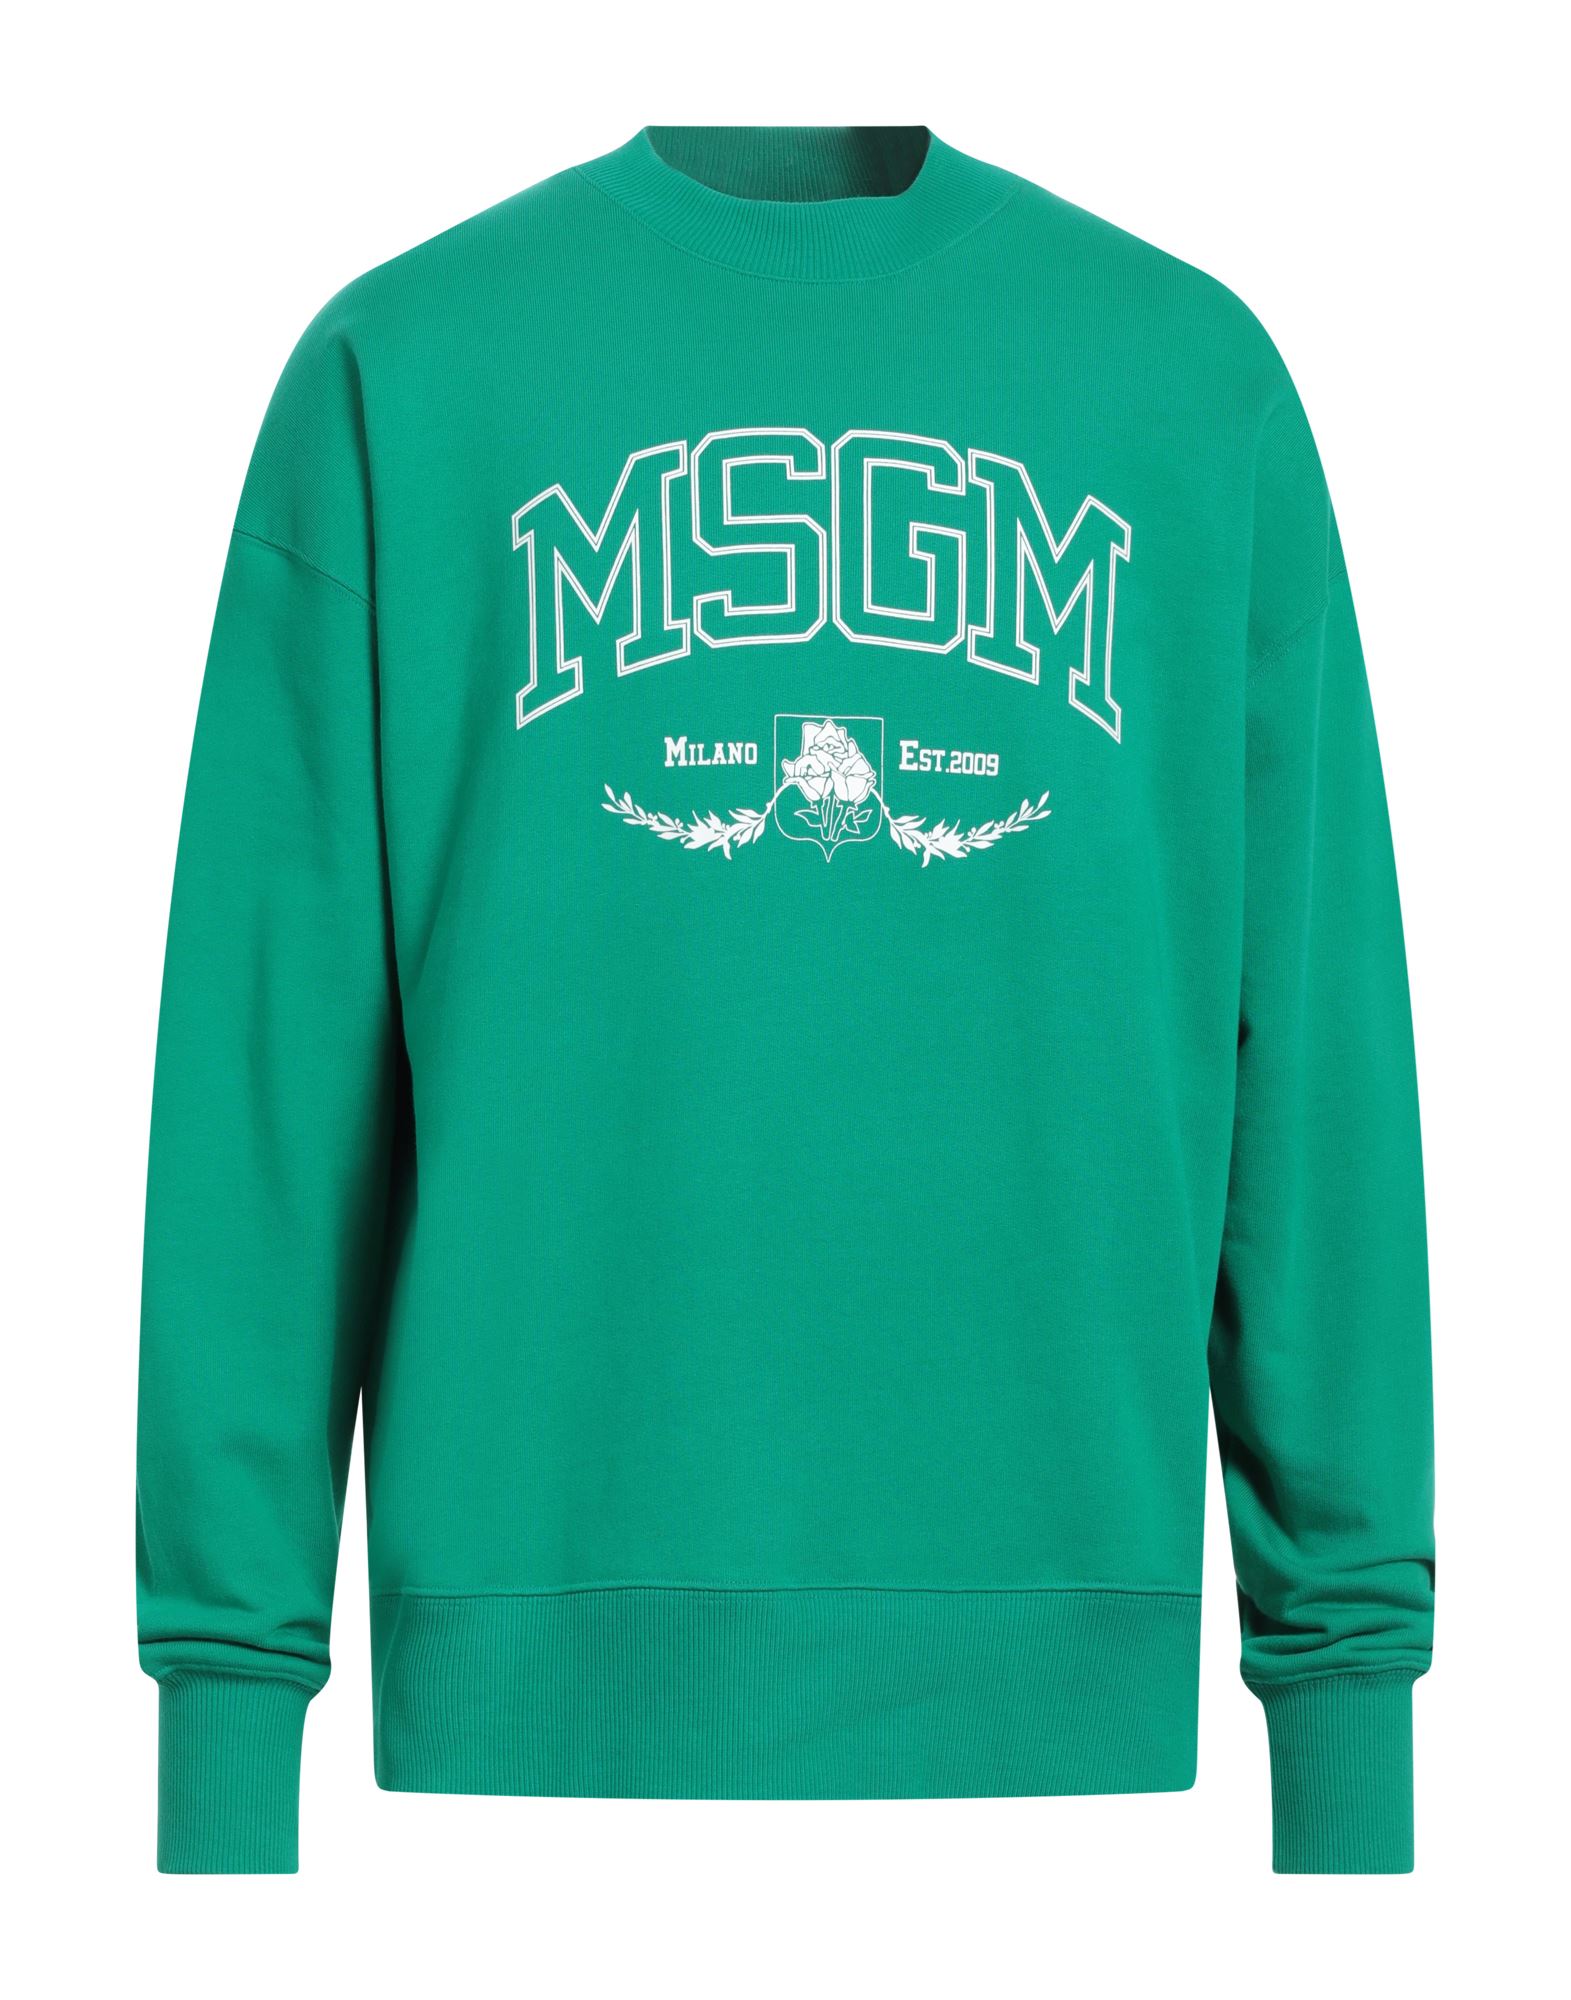 MSGM Sweatshirt Herren Grün von MSGM